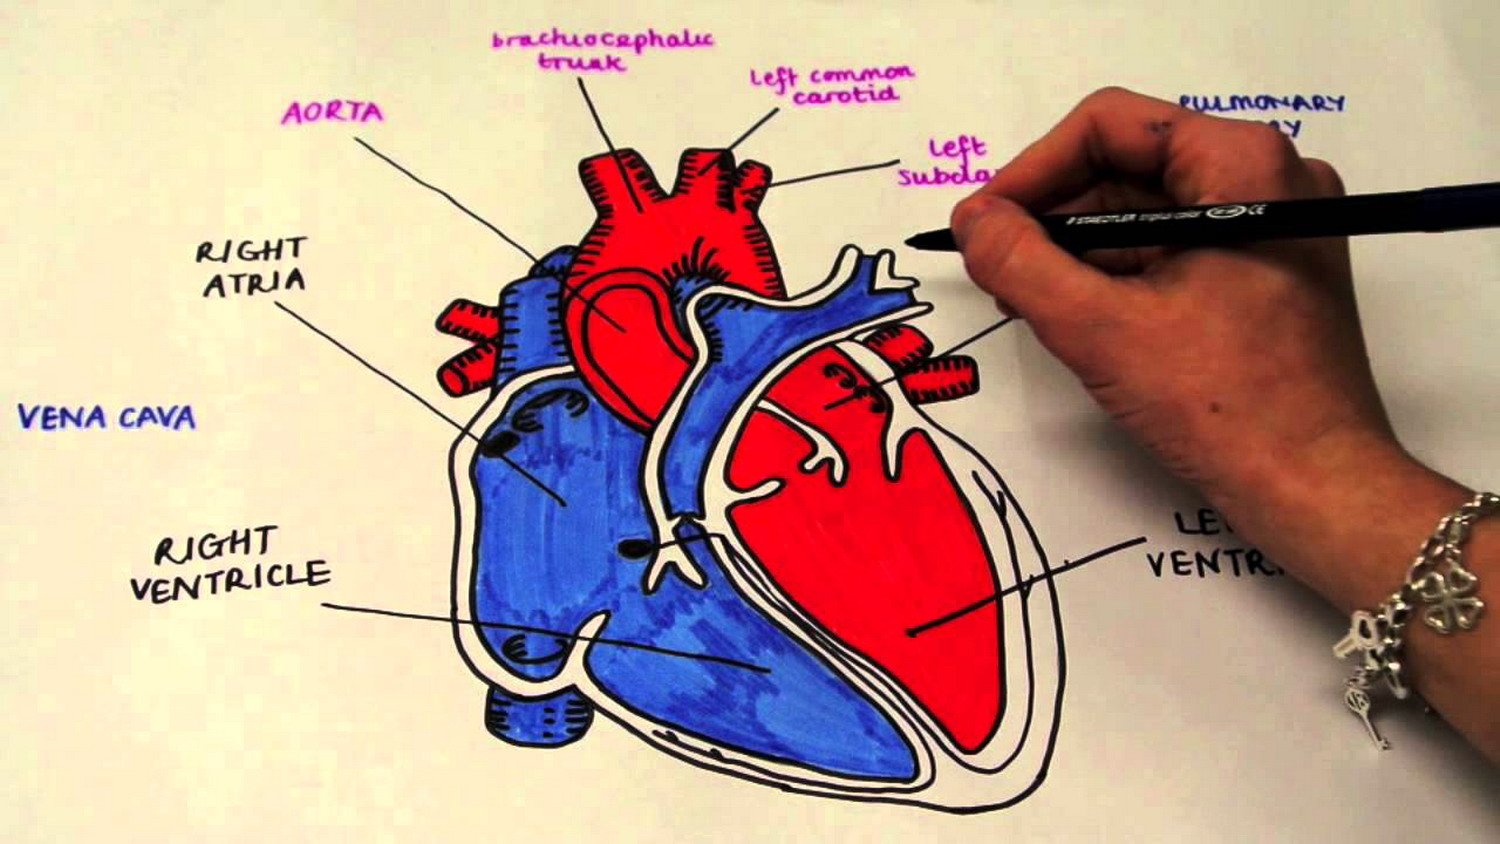 Dal 12 febbraio il servizio “Cardiologie aperte” per avere informazioni sulla salute del cuore